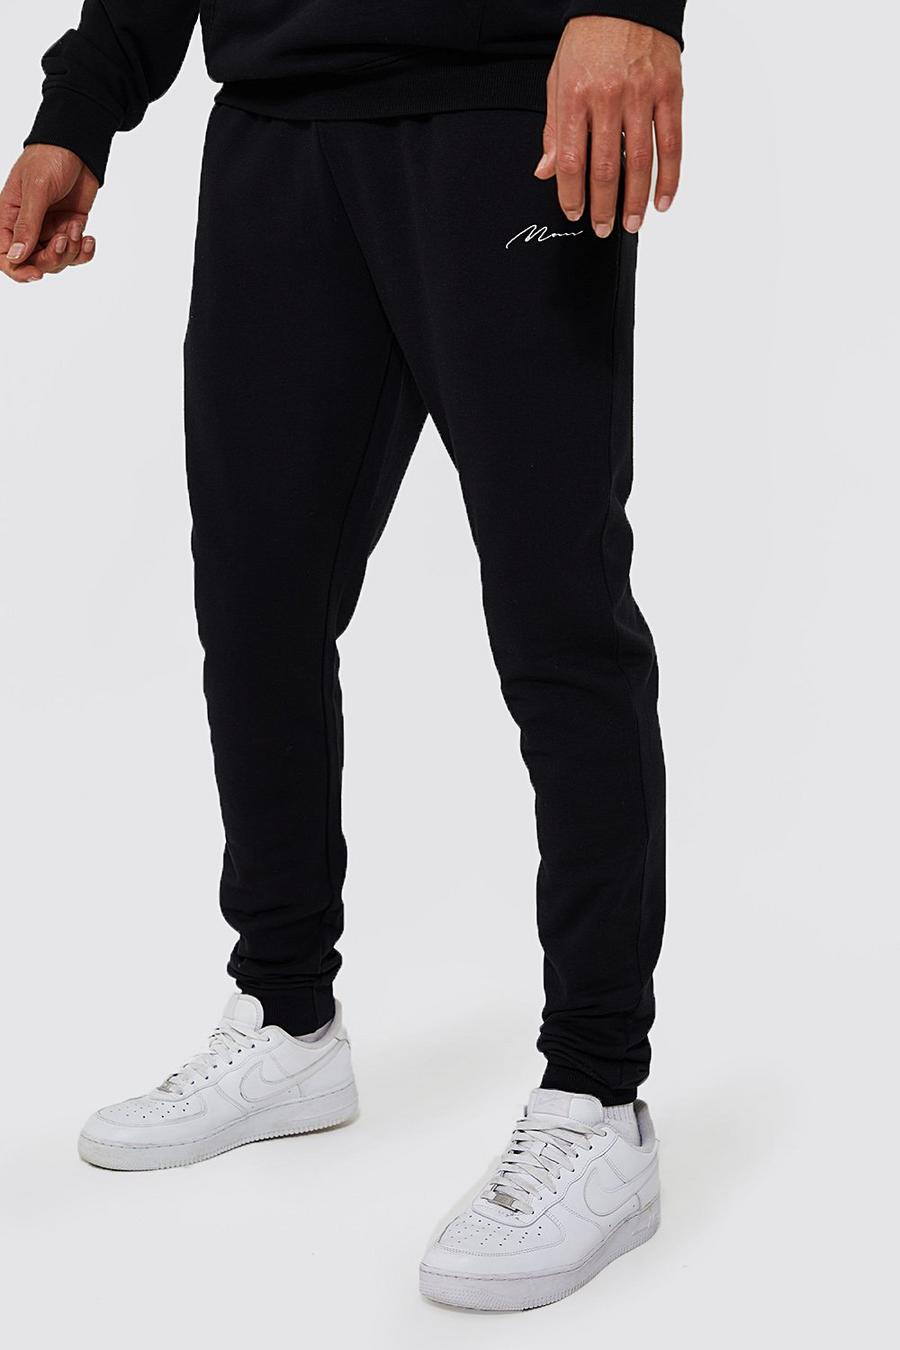 Pantaloni tuta Tall Man Skinny Fit in cotone REEL, Black nero